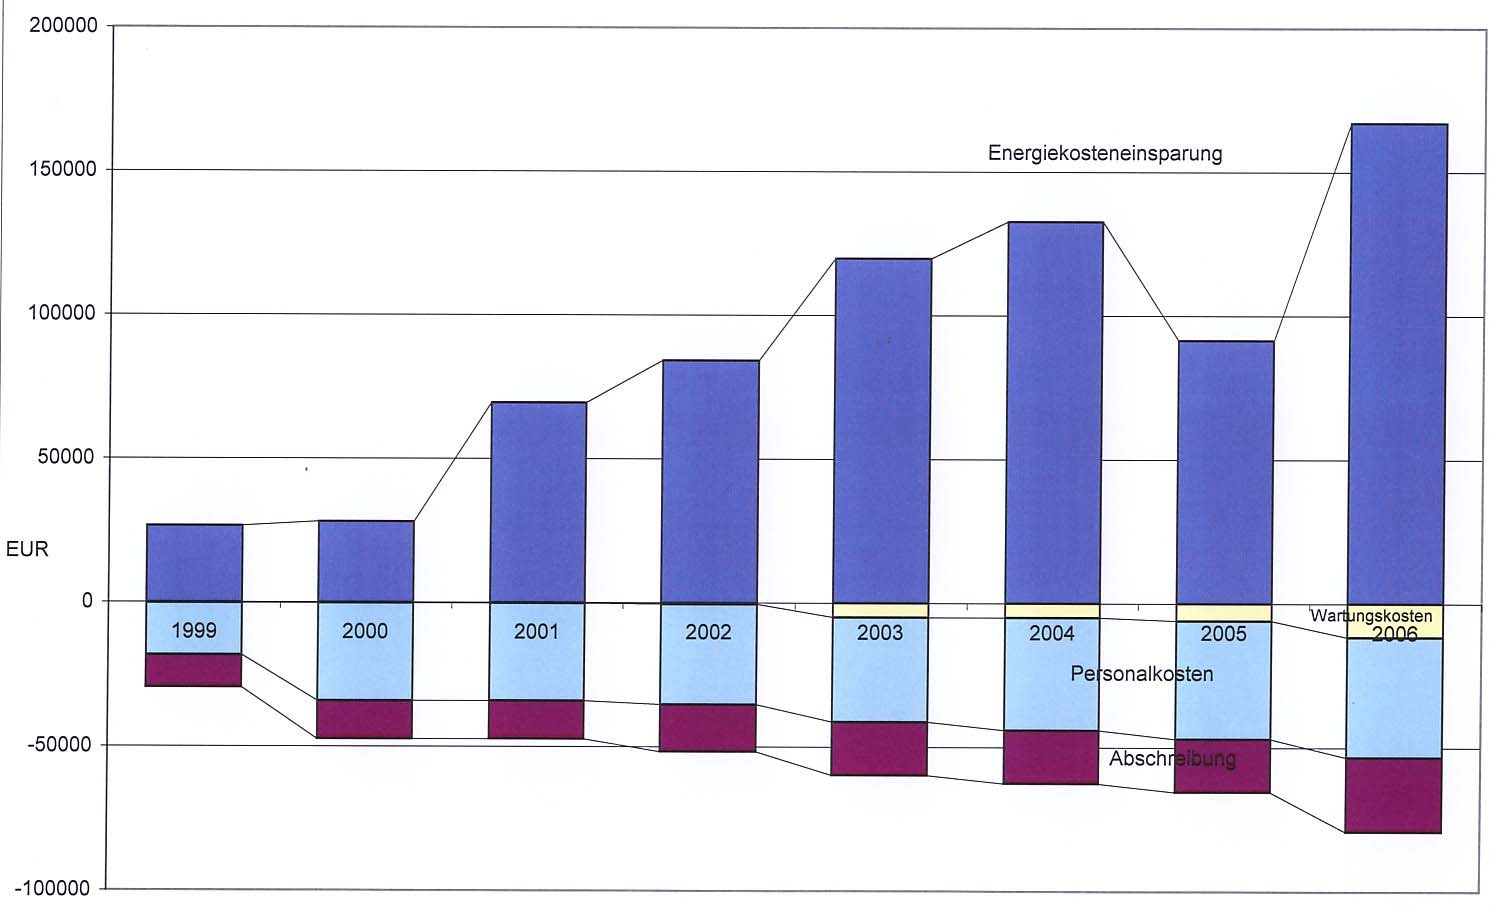 Energiebericht 2007 Wirtschaftlichkeit: Unter Berücksichtigung der Personalkosten, der Ausgaben für Energiesparmaßnahmen (Abschreibung) und für Wartung, hat in den Jahren 1999-2006 jeder